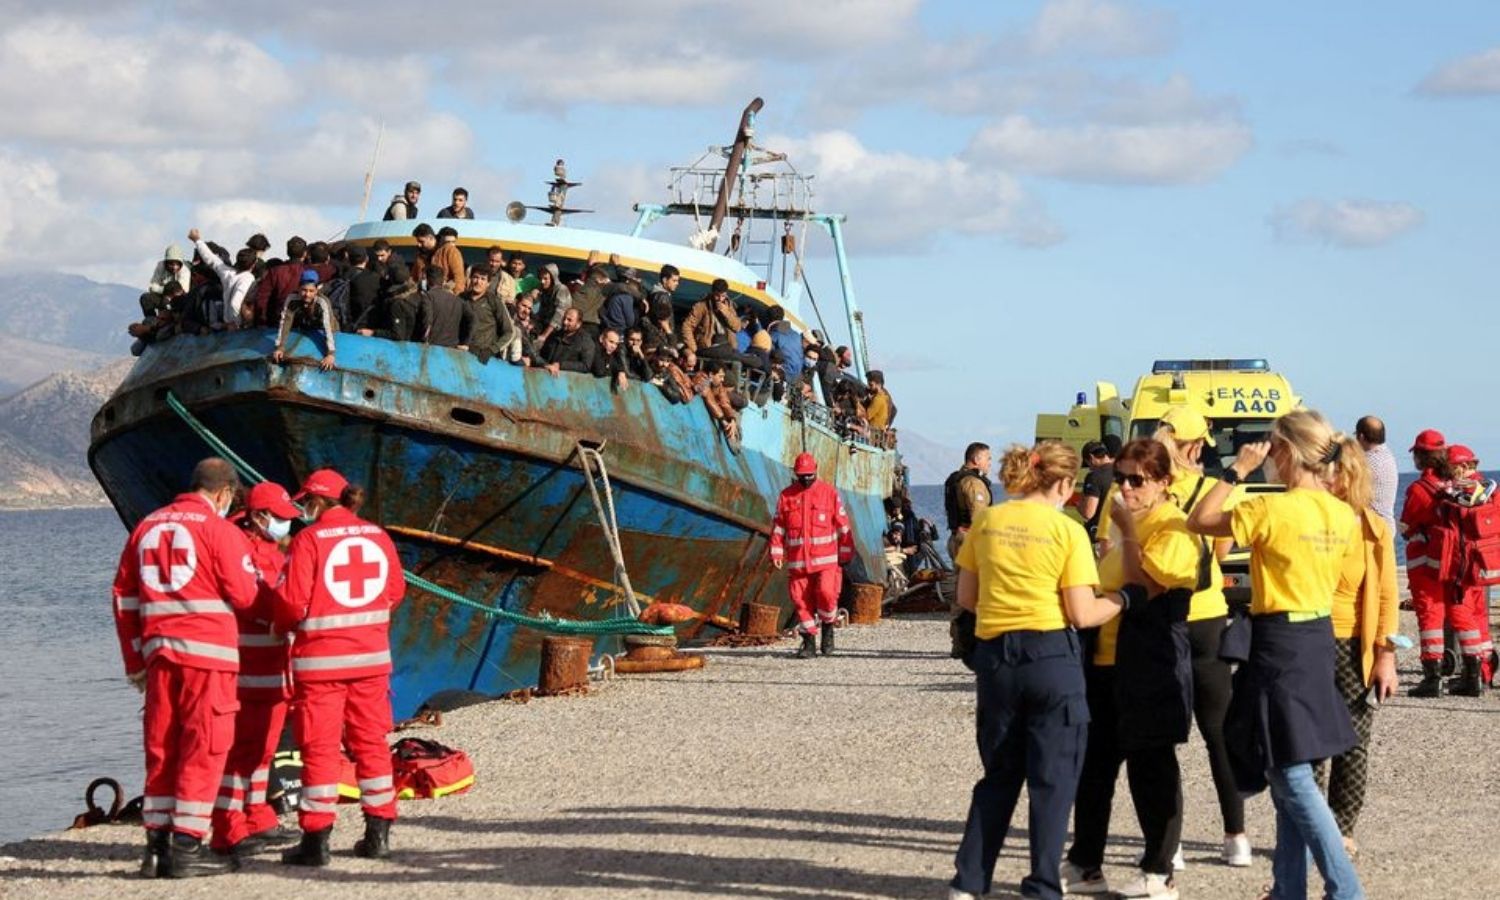 متطوعو الصليب الأحمر وطواقم الإنقاذ يقفون بجوار قارب صيد يحمل مهاجرين في ميناء باليوخورا، بعد عملية إنقاذ قبالة جزيرة كريت_22 من تشرين الثاني 2022 (REUTERS)